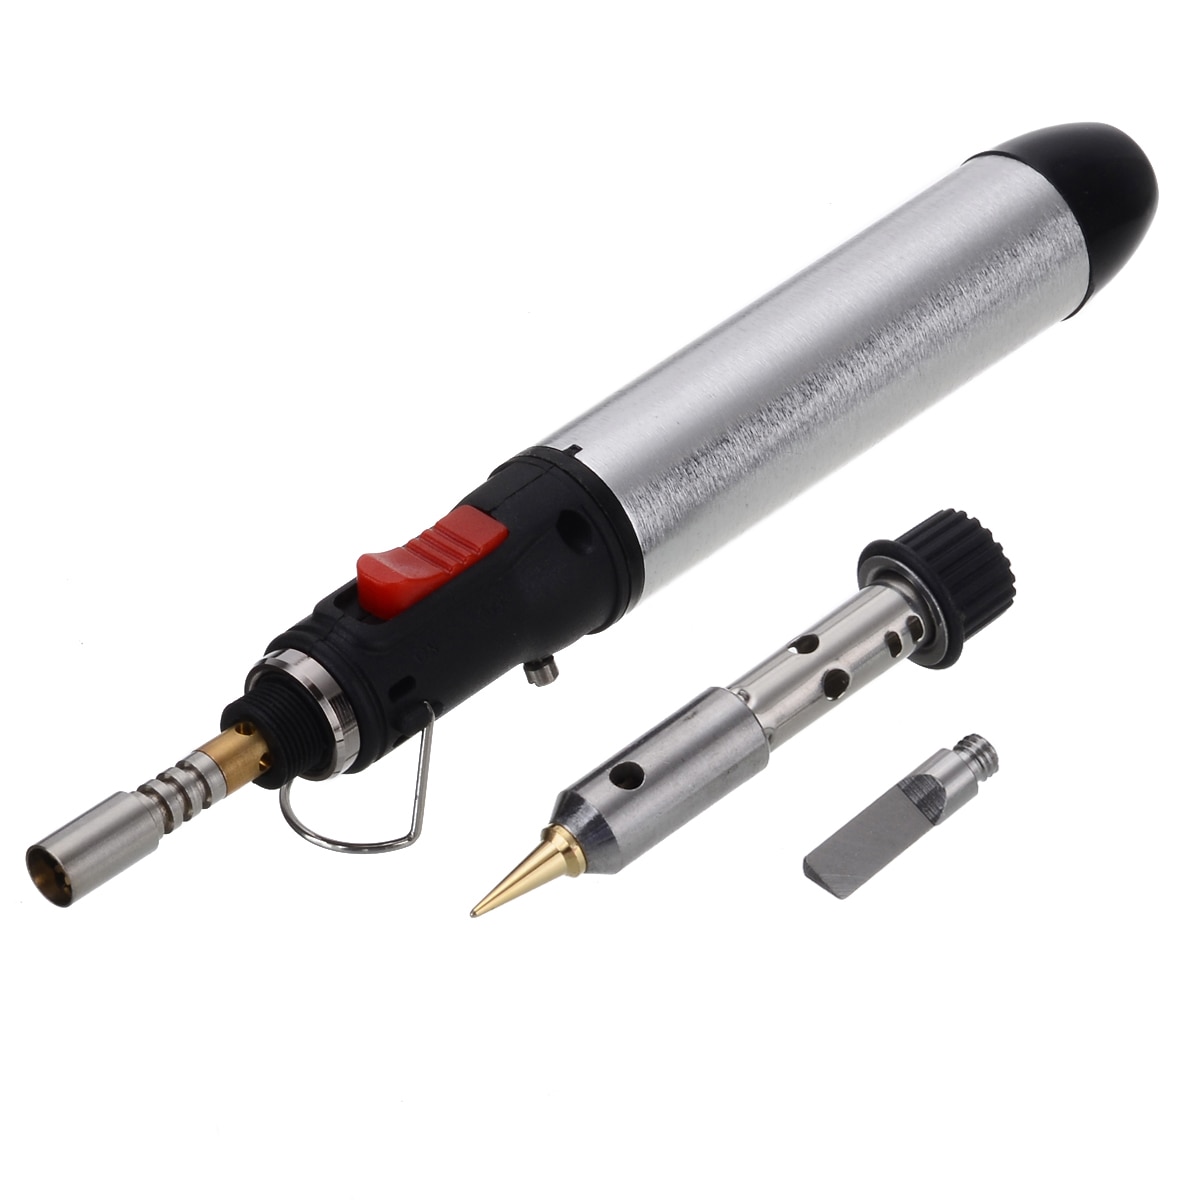 Portable Cordless Flame Butane Tip Tool 4 in 1 Gas Soldering Iron Kit Welding Pen Burner 12ML Welding Soldering Kit